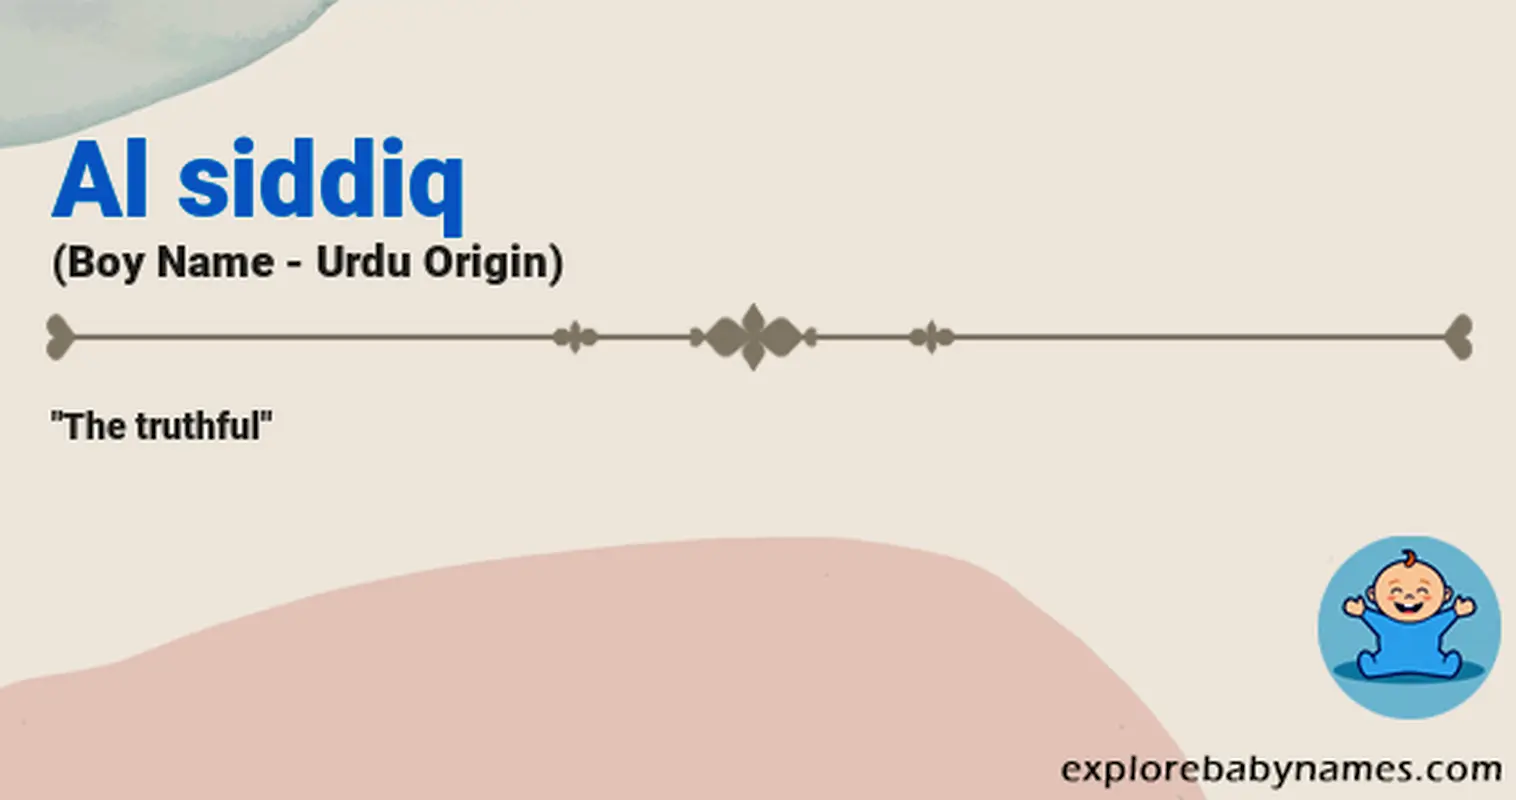 Meaning of Al siddiq